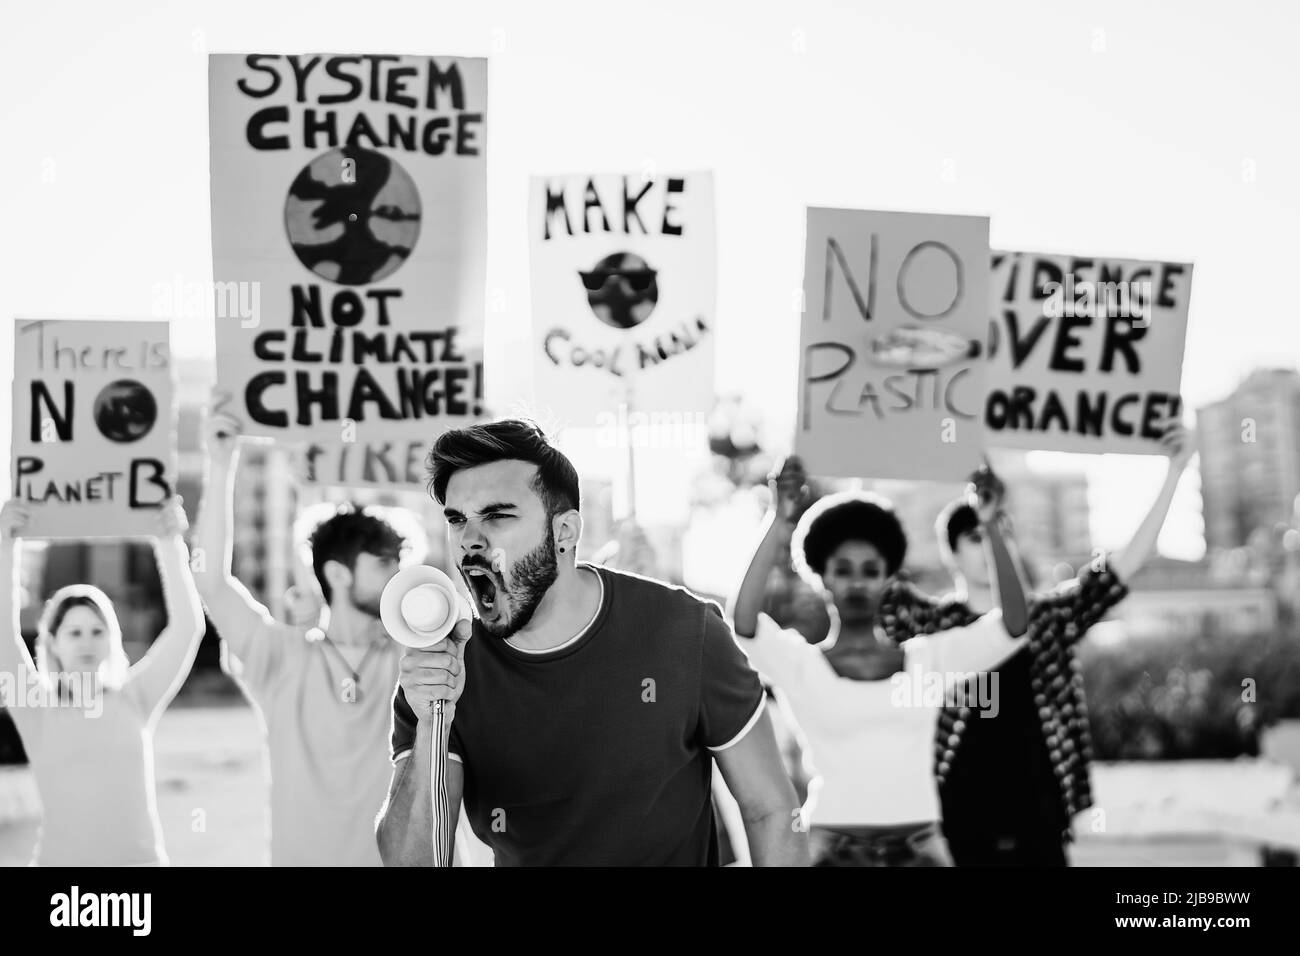 Groupe de jeunes militants protestant contre le changement climatique - concept de réchauffement climatique Banque D'Images